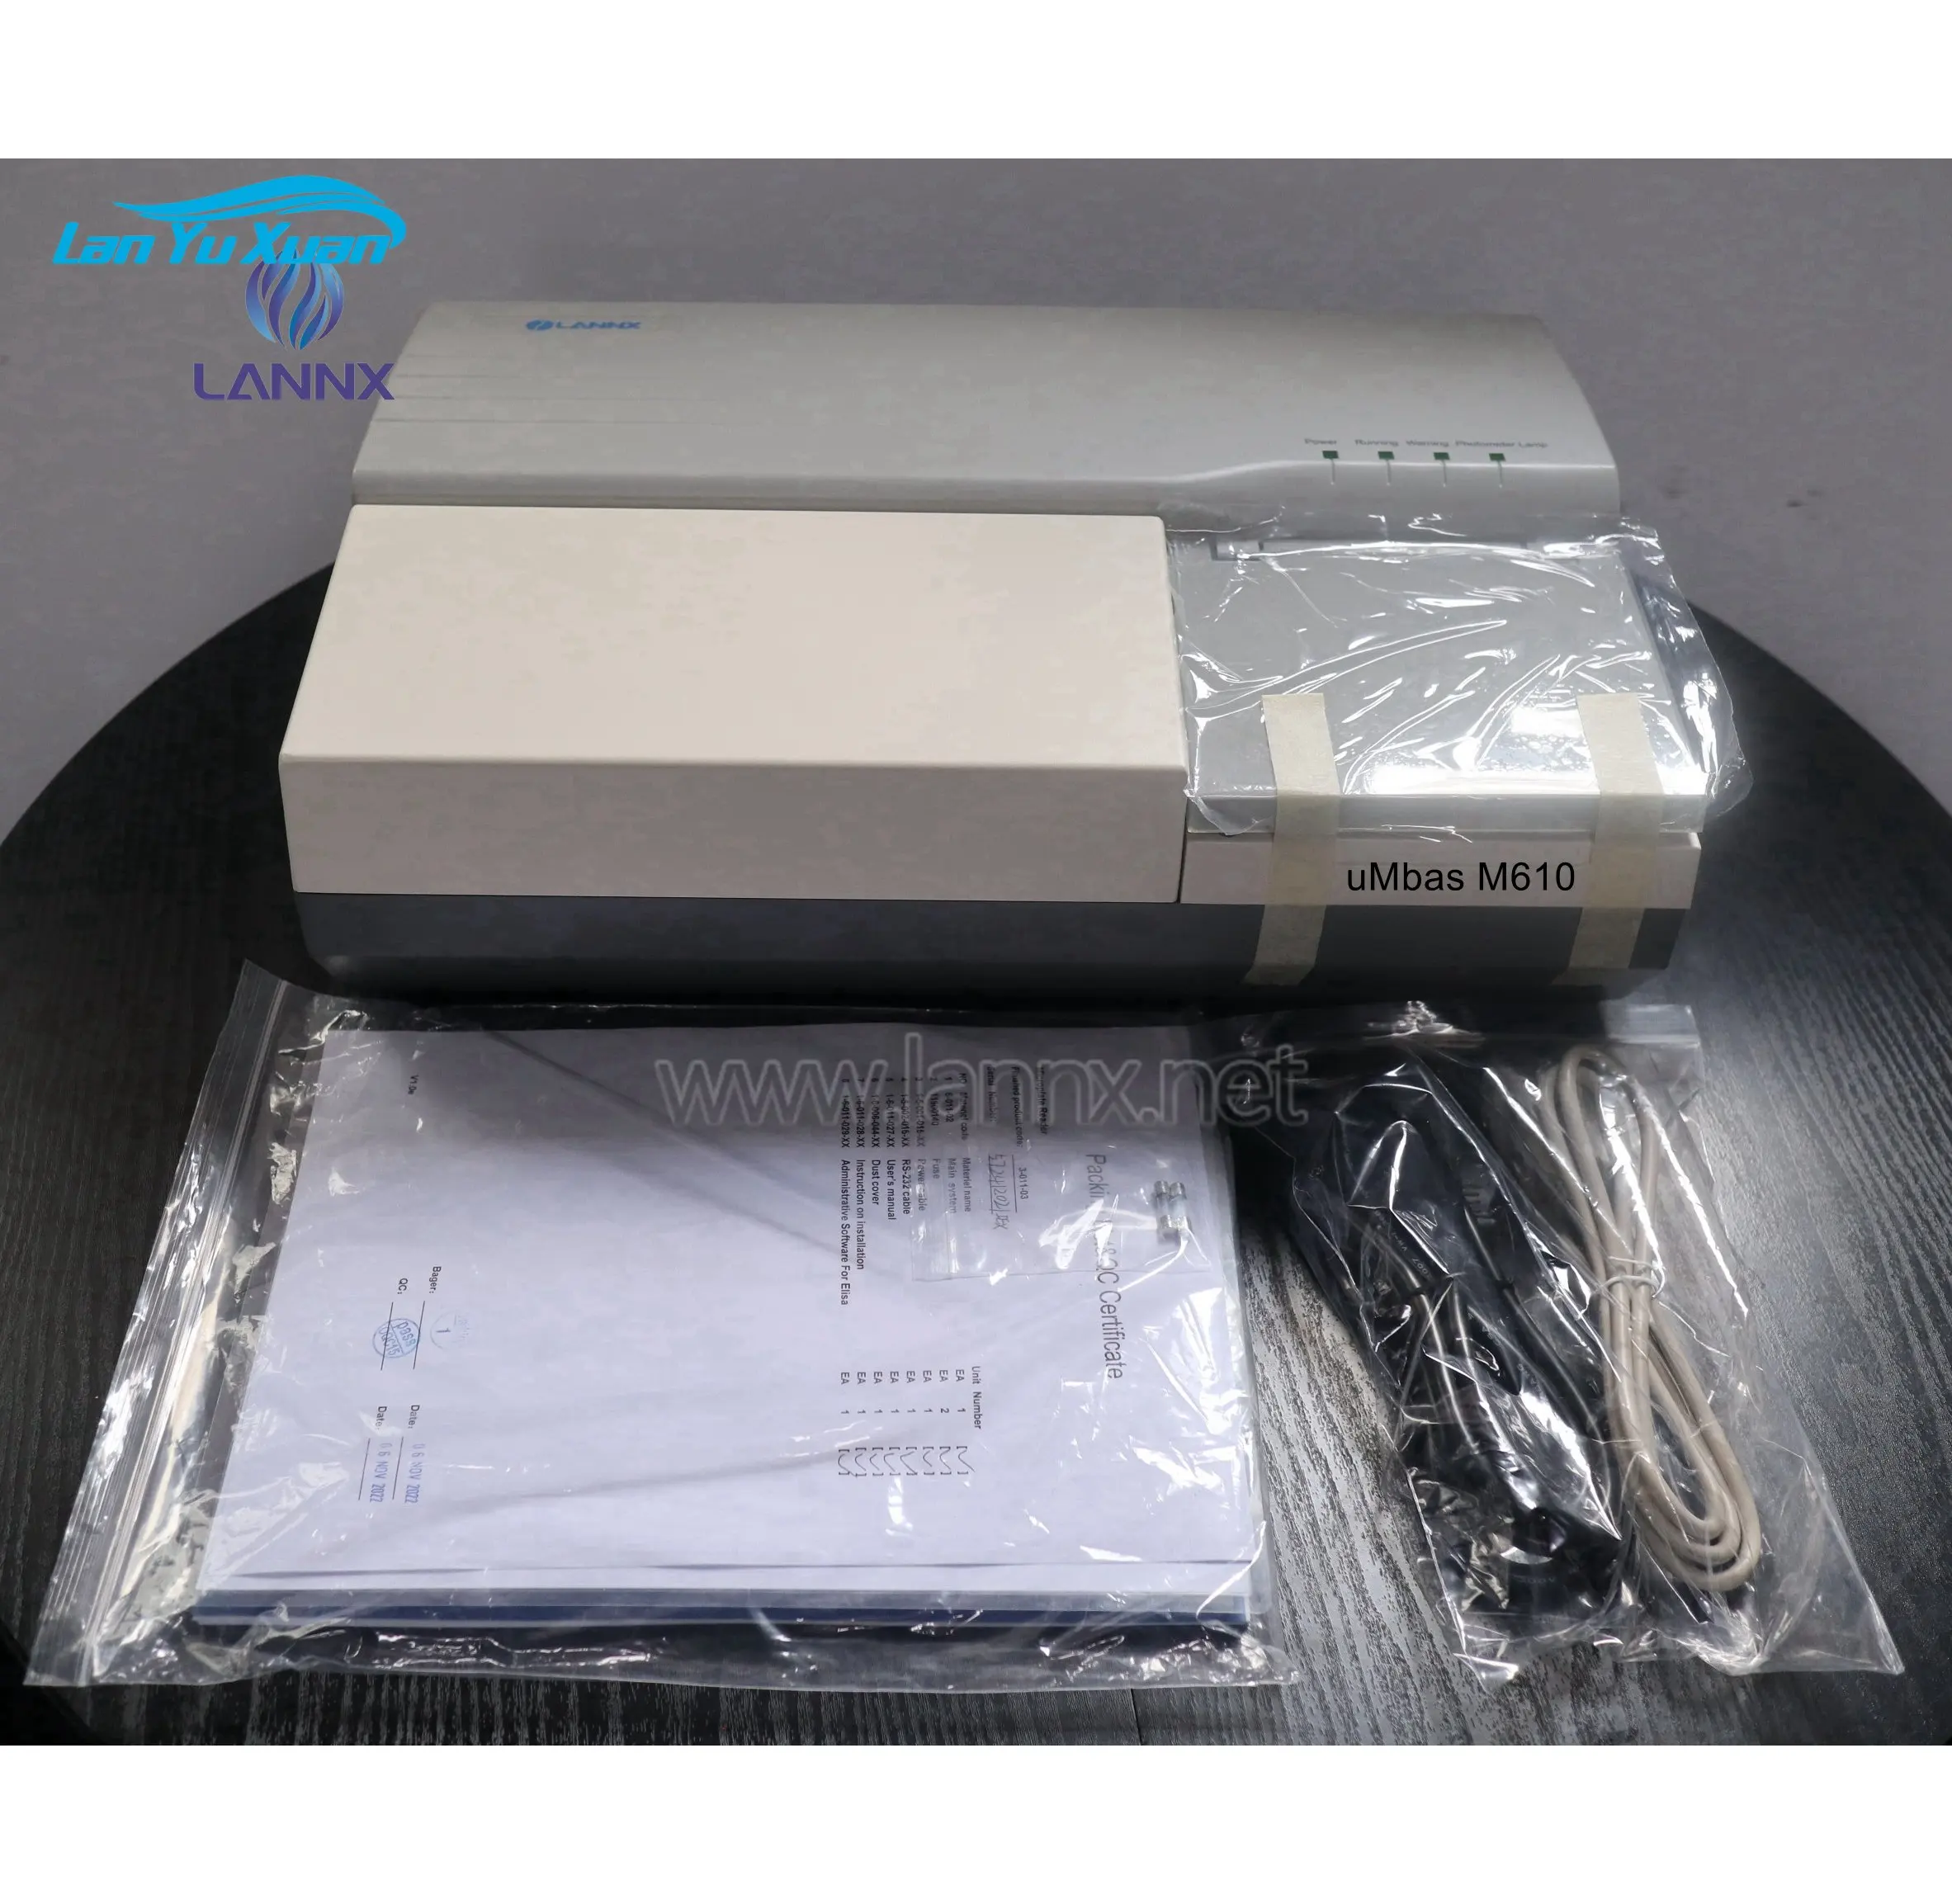 LANNX uMbas M610 חם למכור רפואי קרינה פלואורסצנטית Immunoassay מנתח קרינה פלואורסצנטית Immunochromatographic ניתוח מערכת - 0